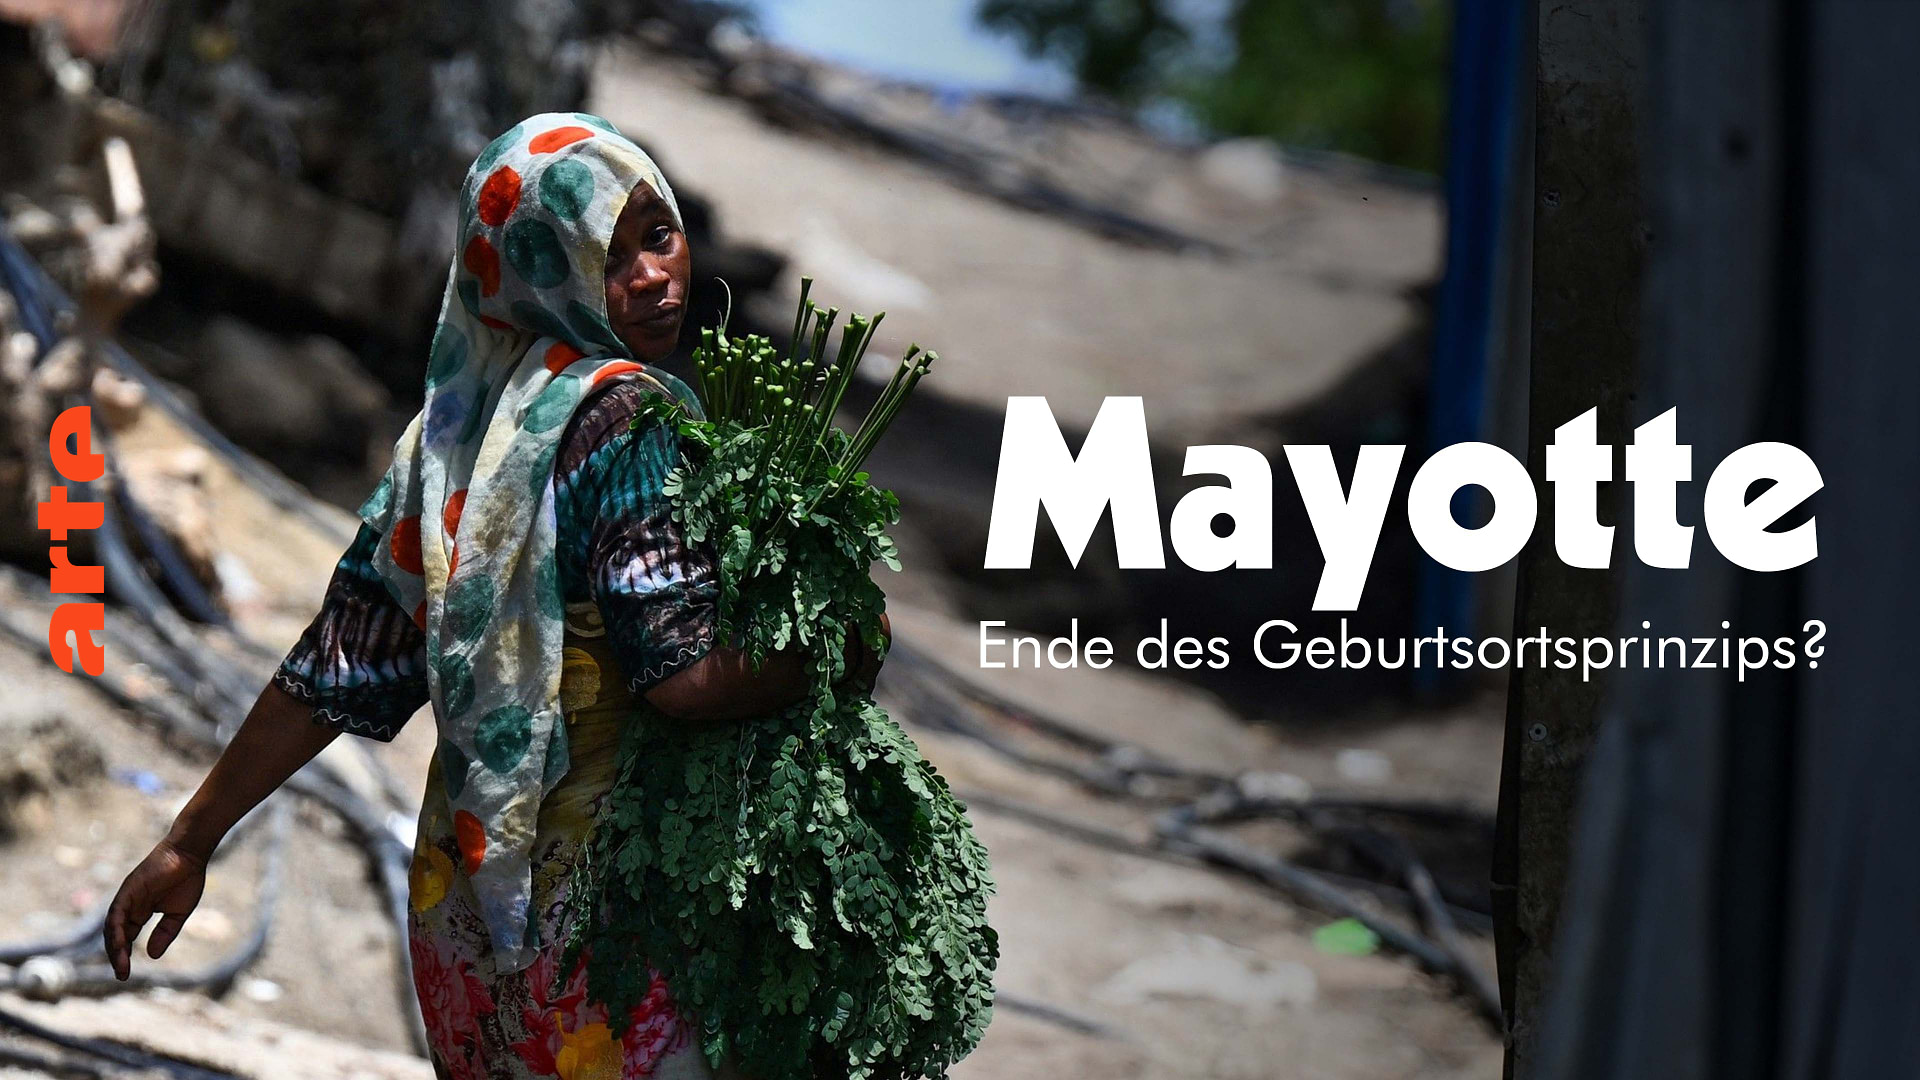 Mayotte: Ende des Geburtsortsprinzips?